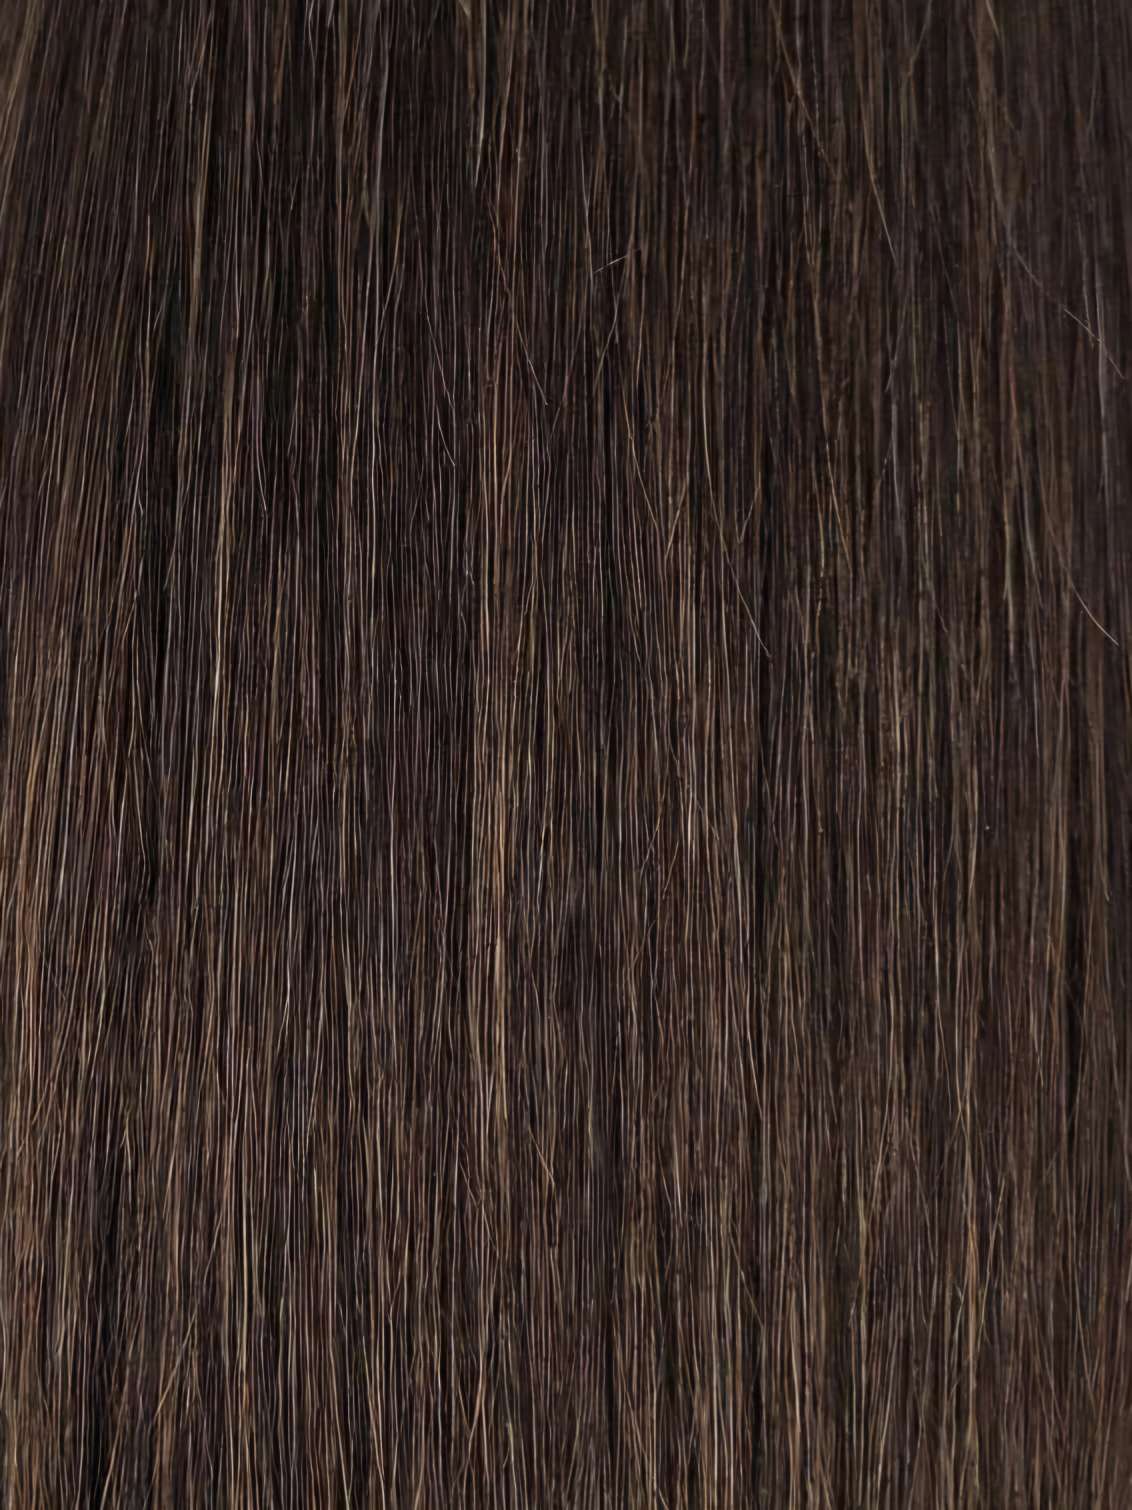 Mylk 100% Remi Human Hair